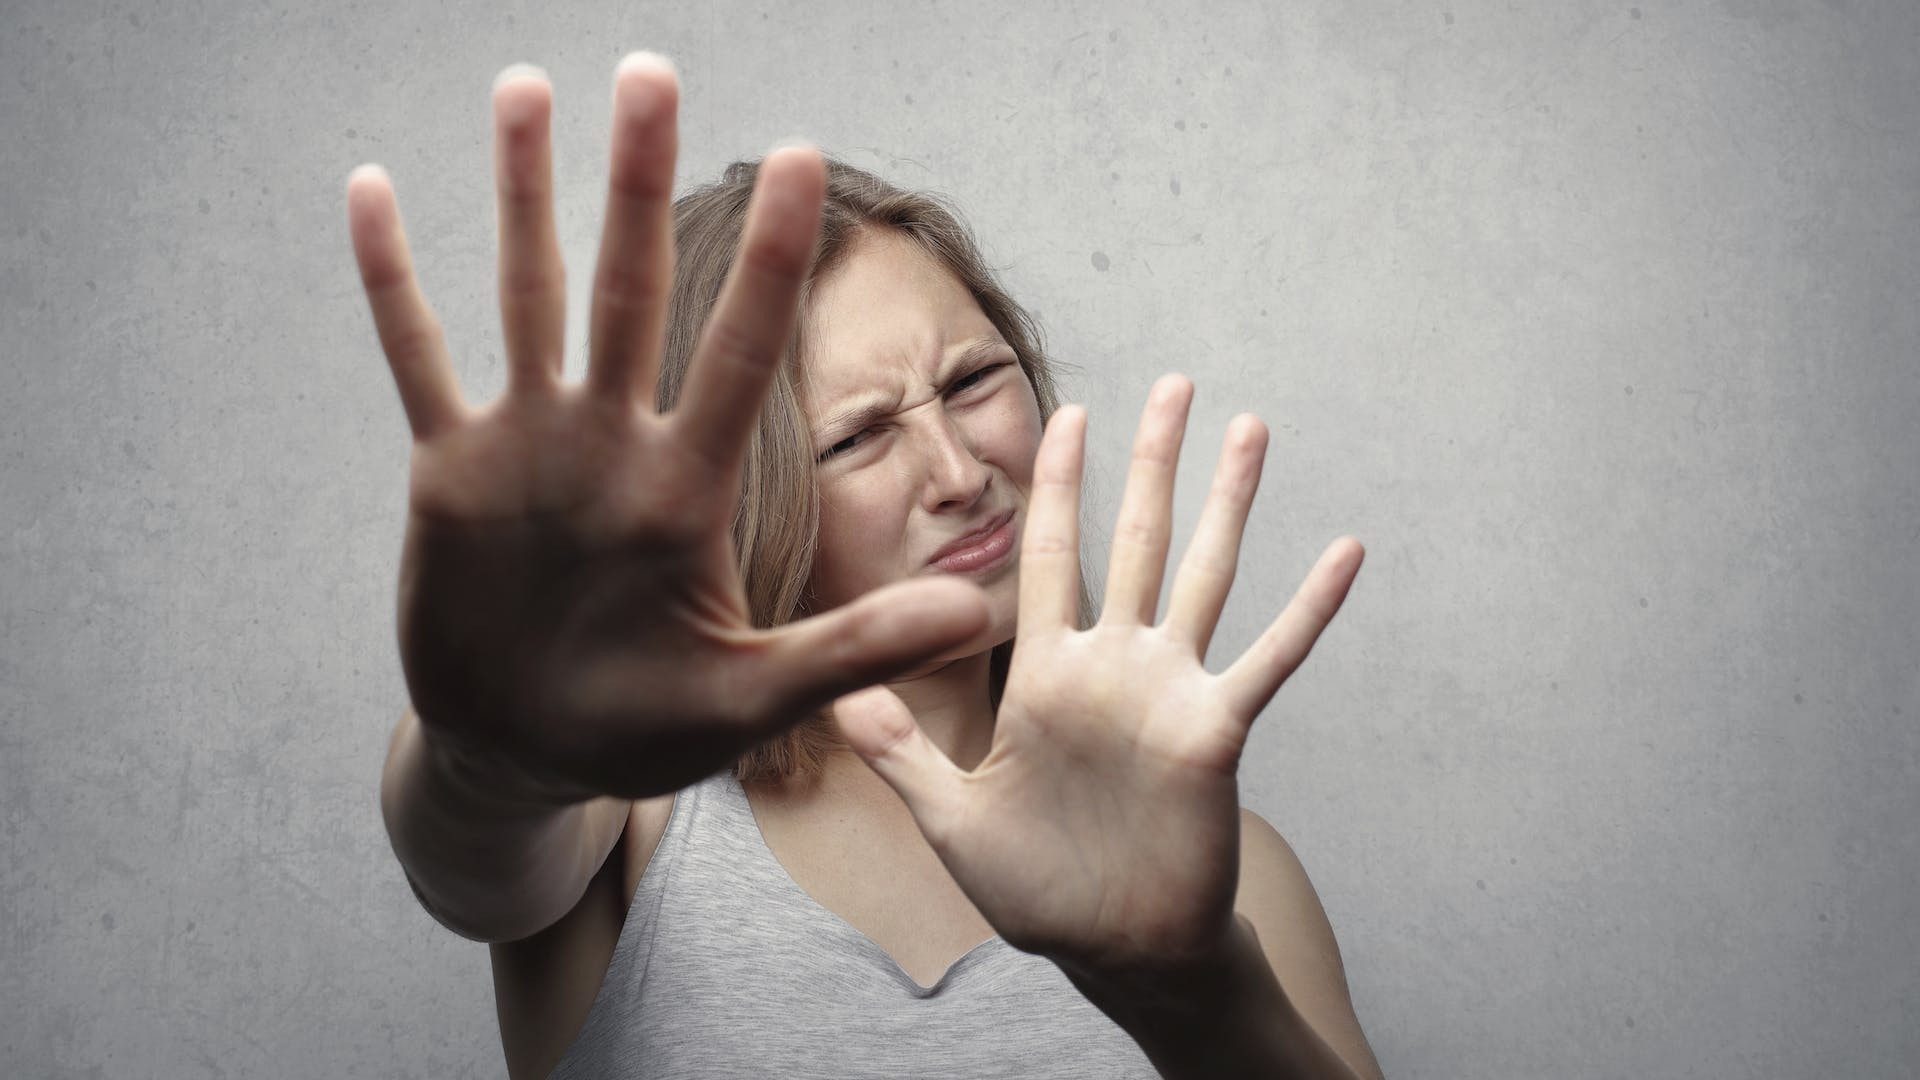 Abstand, bitte: Eine Frau streckt die Hände vor sich aus und verzieht das Gesicht